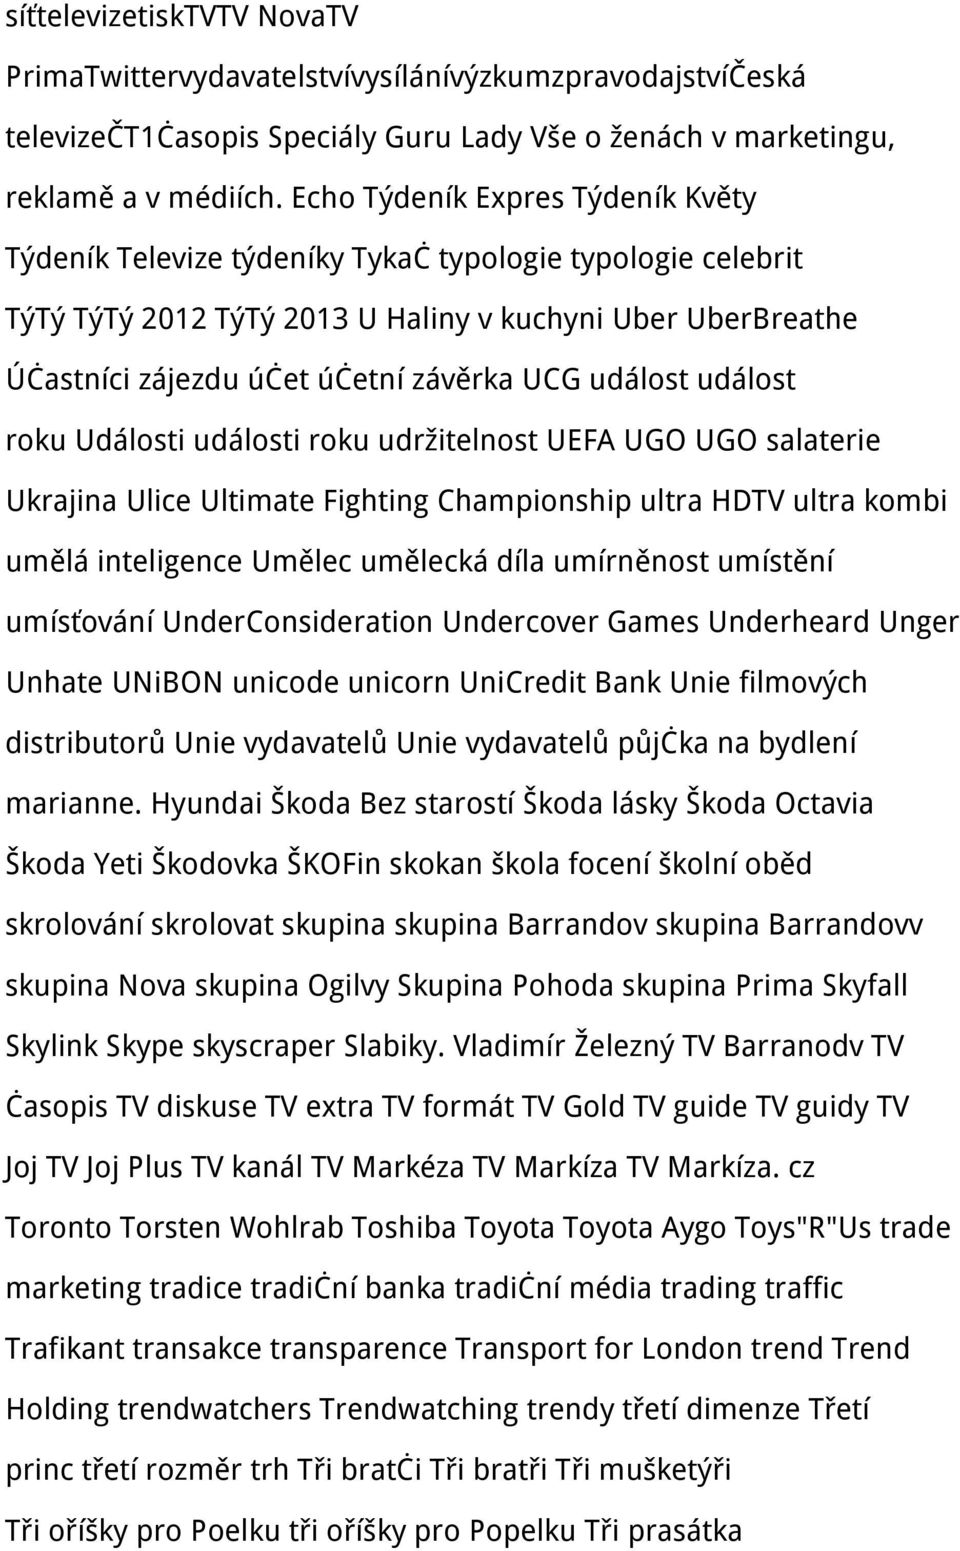 událost událost roku Události události roku udržitelnost UEFA UGO UGO salaterie Ukrajina Ulice Ultimate Fighting Championship ultra HDTV ultra kombi umělá inteligence Umělec umělecká díla umírněnost